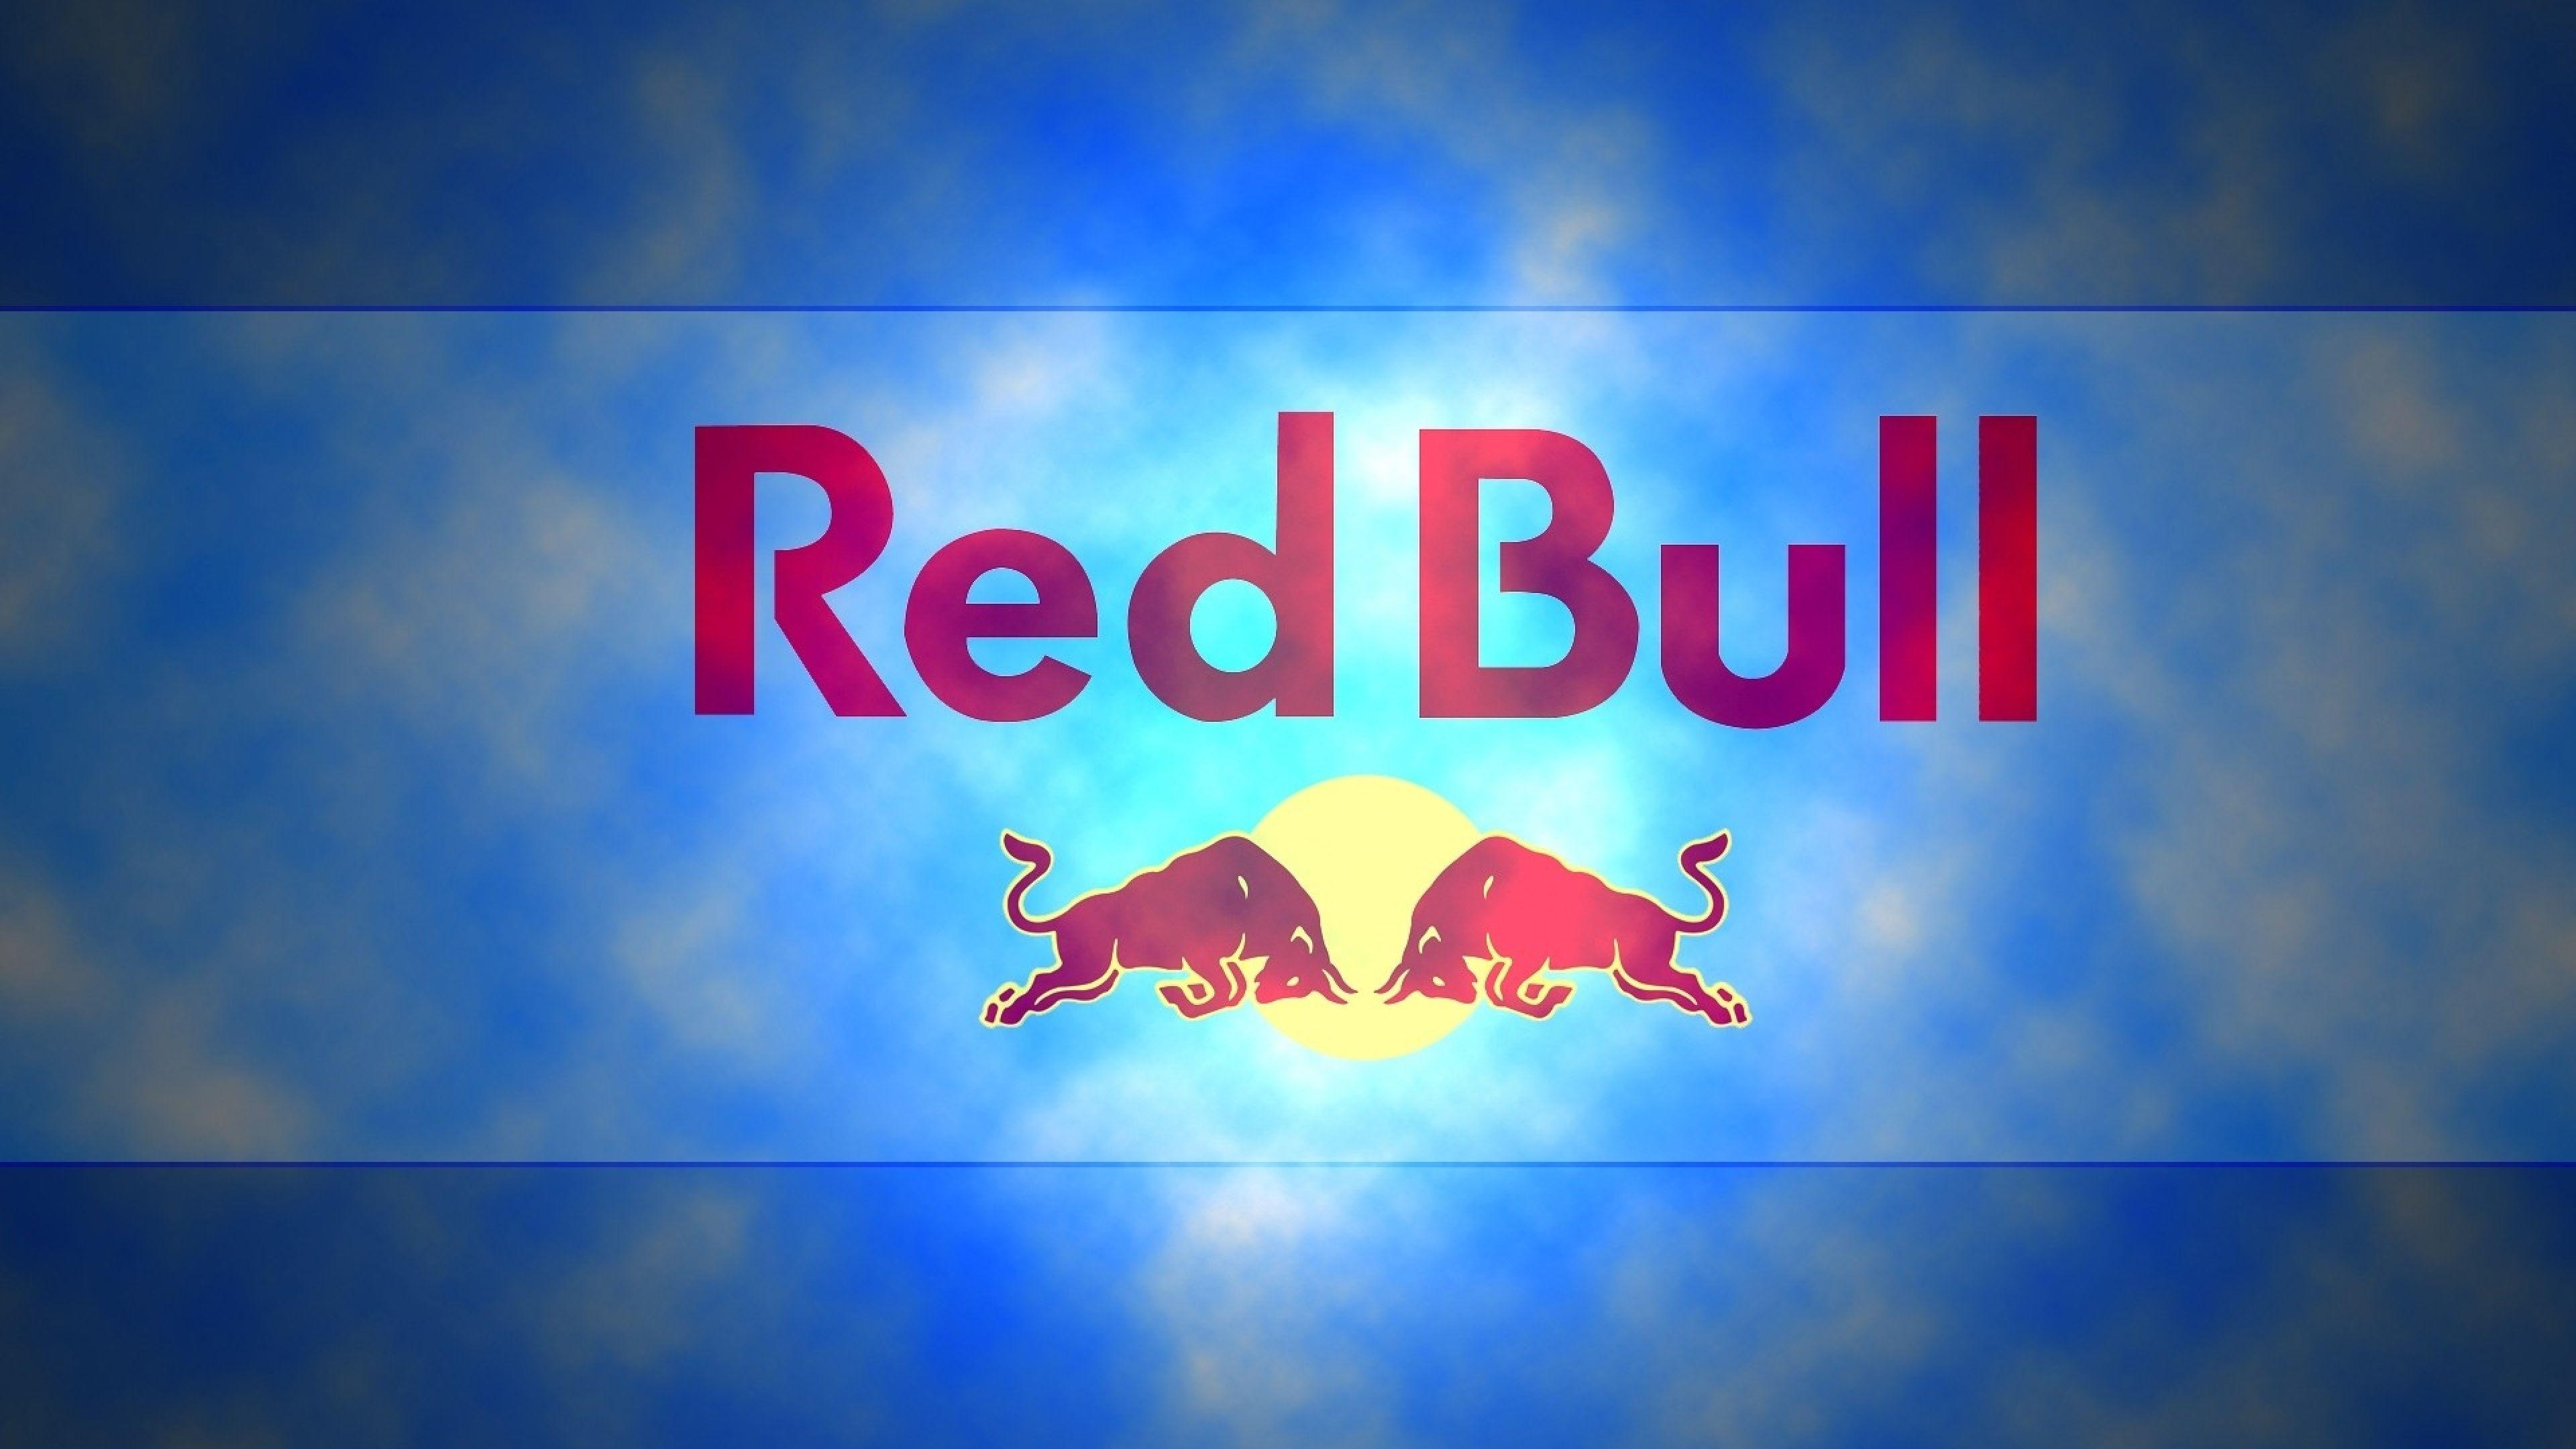 Red Bull Widescreen Wallpaper 60698 3840x2160 px